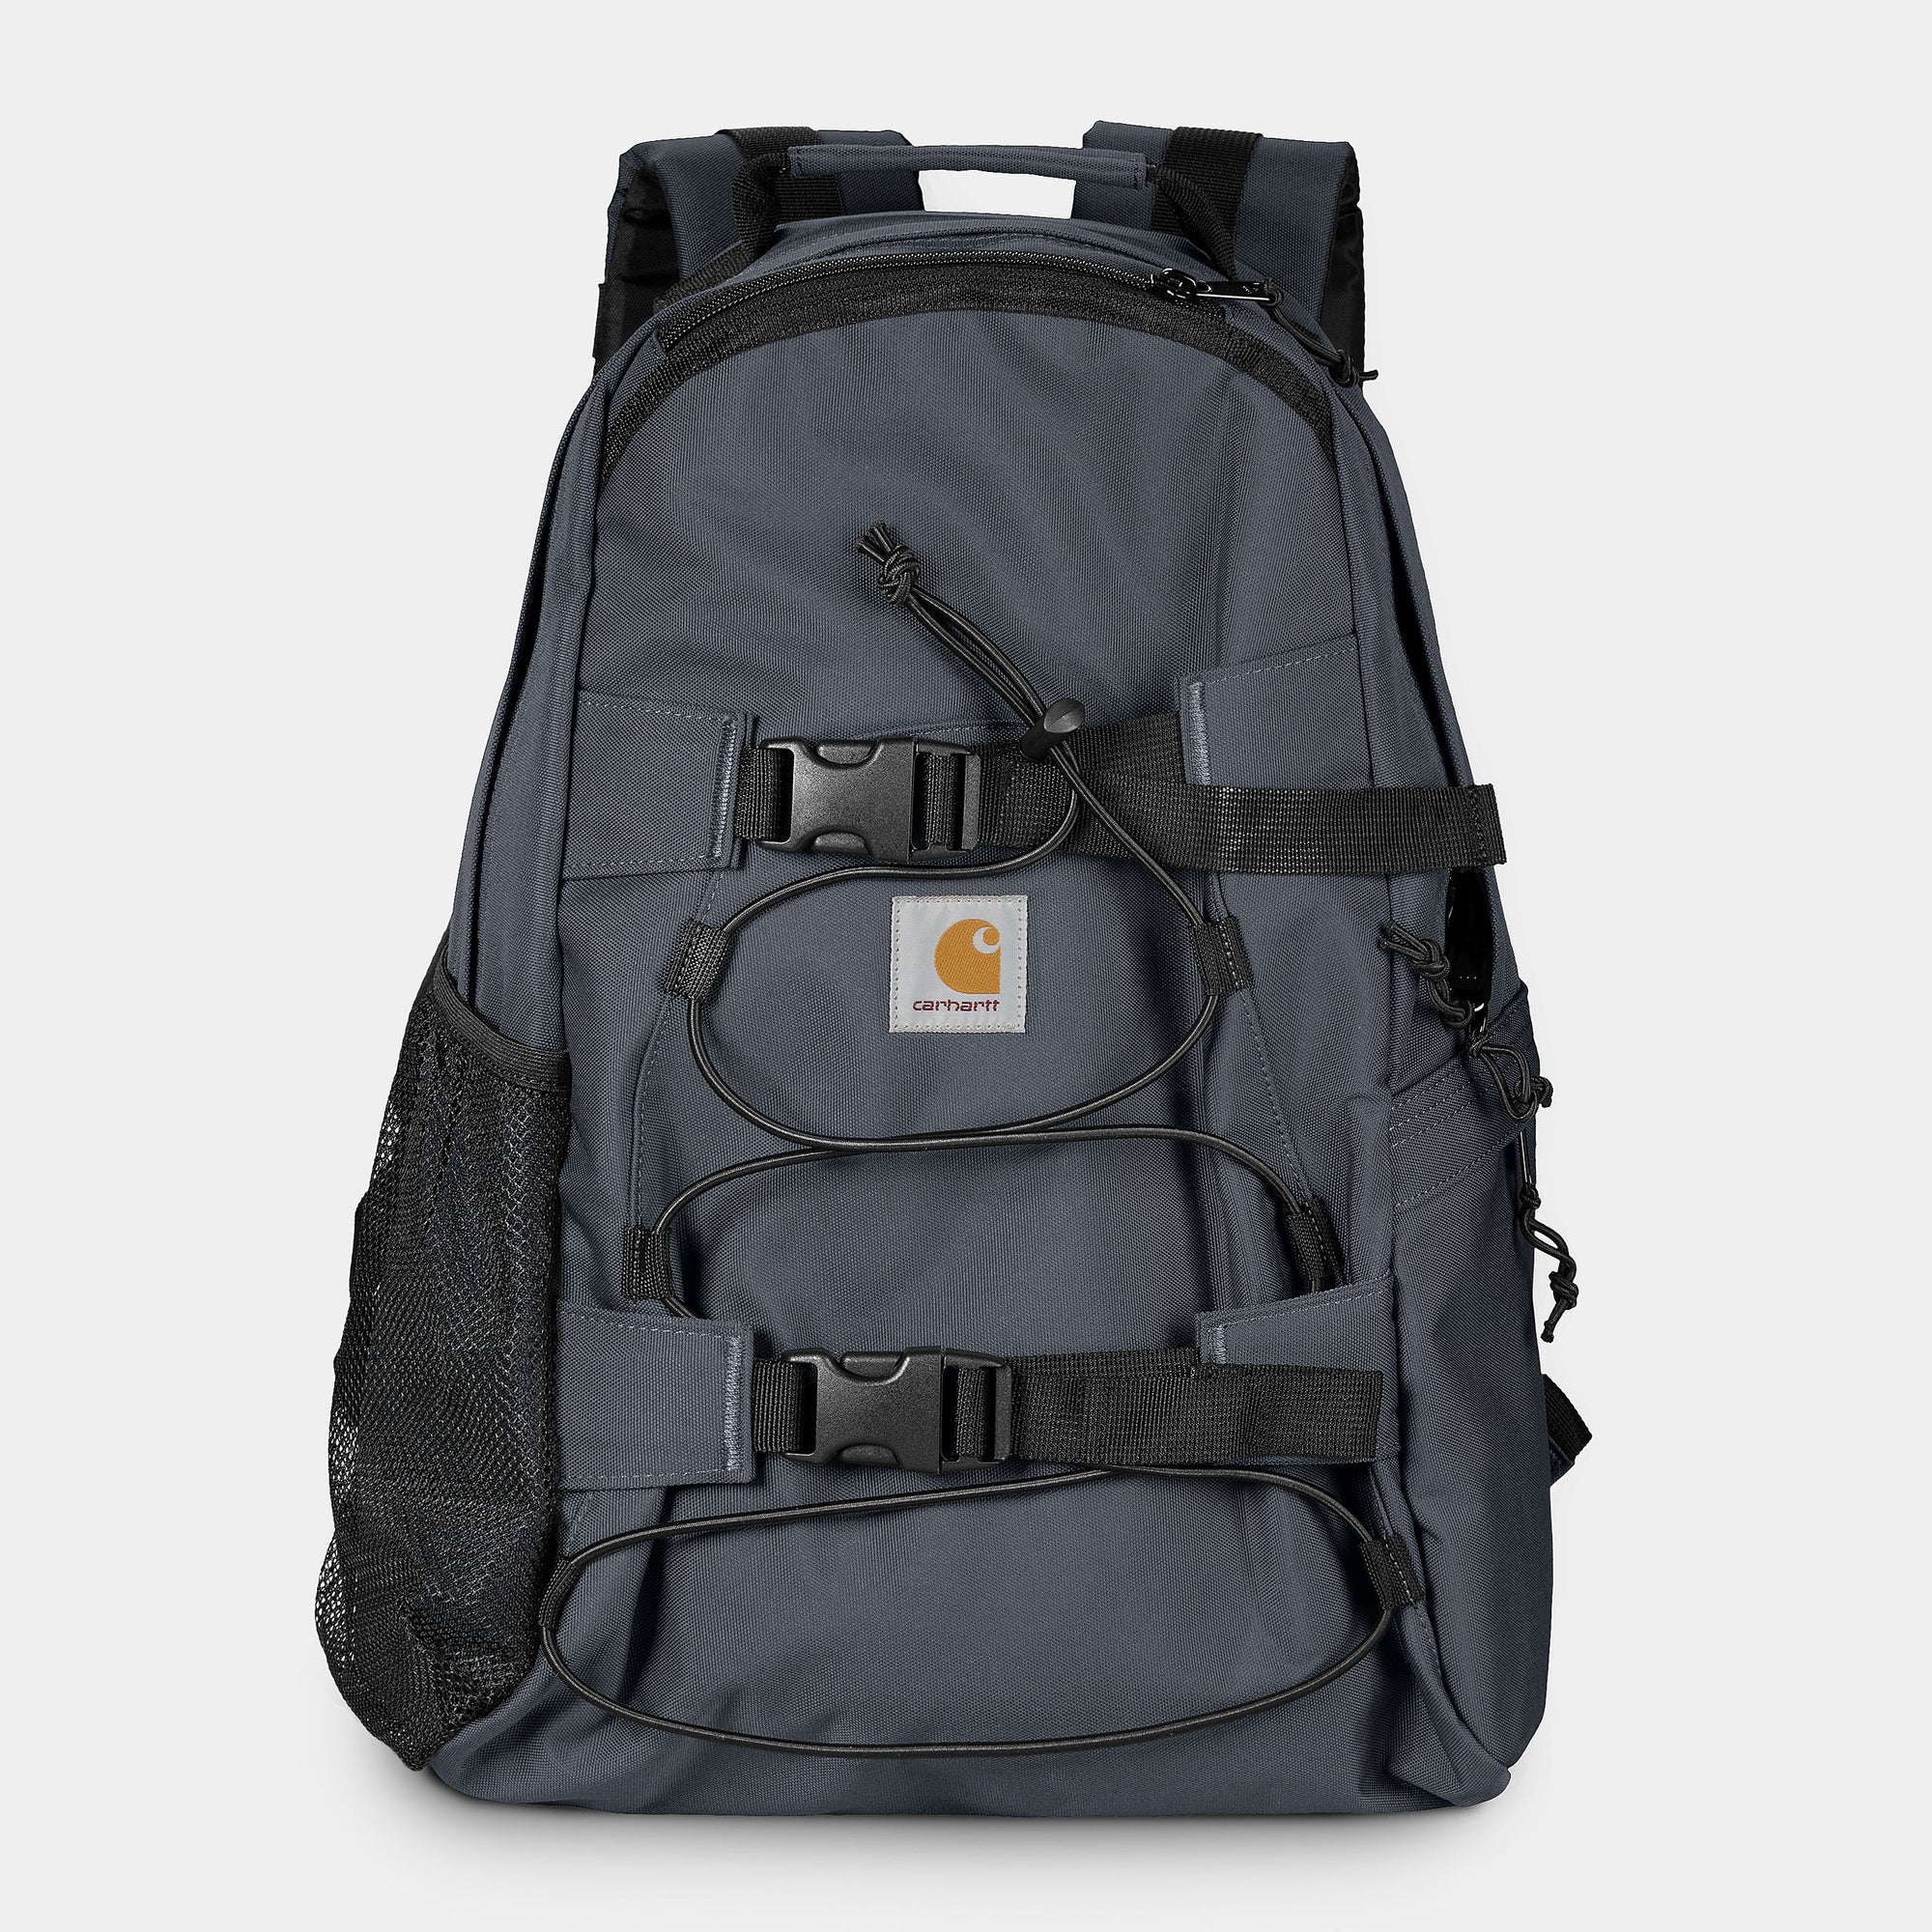 Carhartt WIP Kickflip Backpack - Zeus